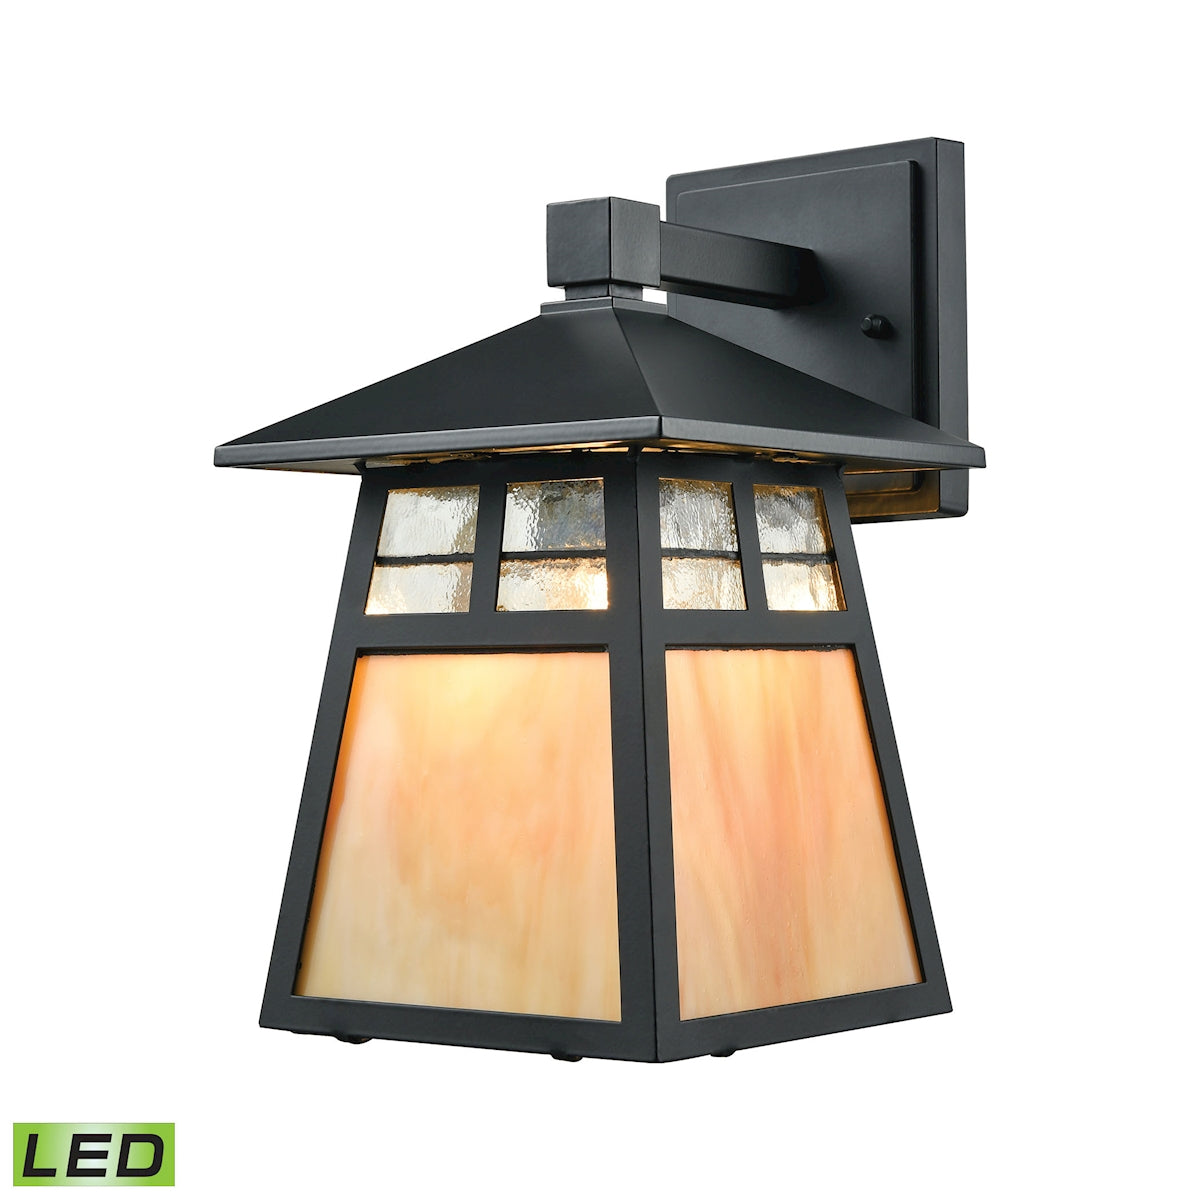 ELK Lighting 87050/1-LED Cottage 1-Light Outdoor Wall Lamp in Matte Black - Includes LED Bulb